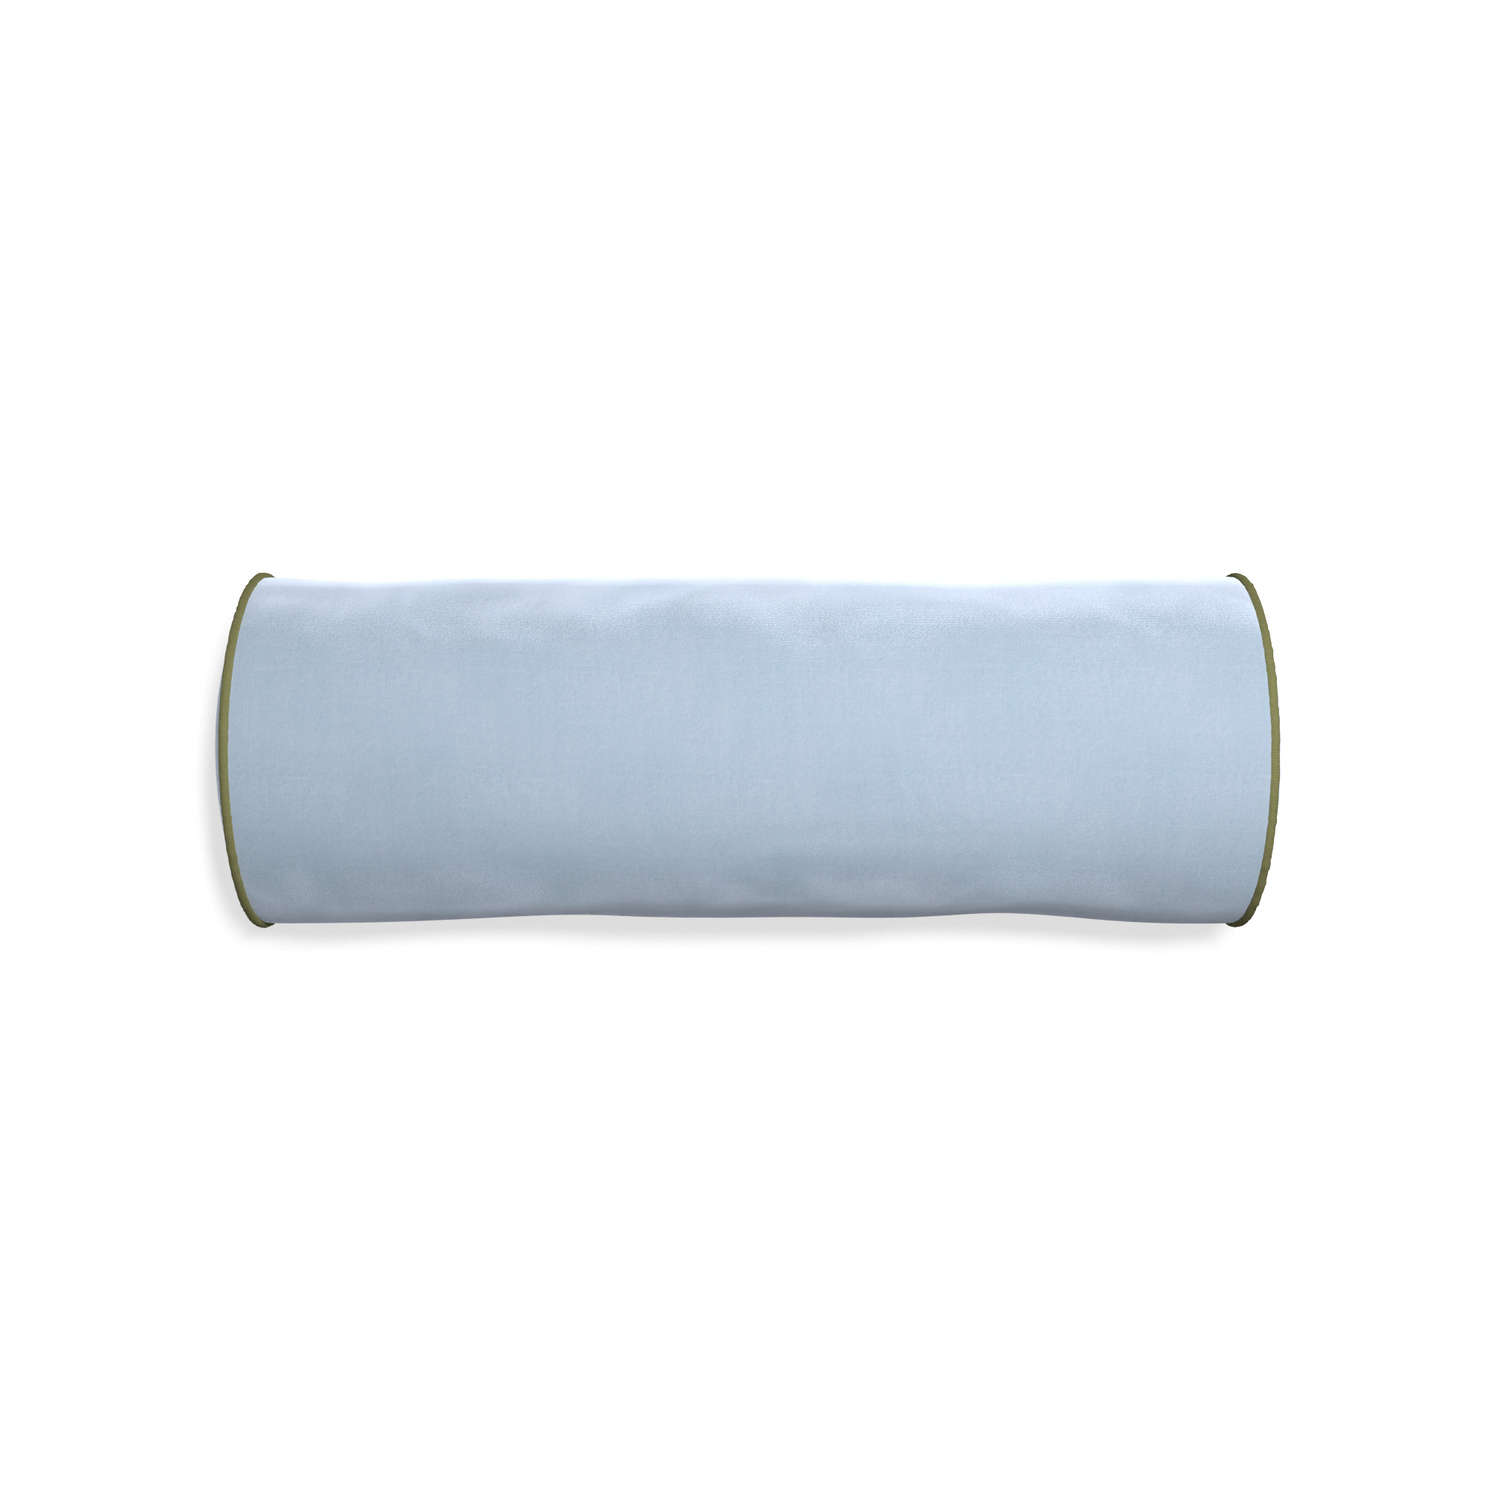 Bolster sky velvet custom pillow with moss piping on white background